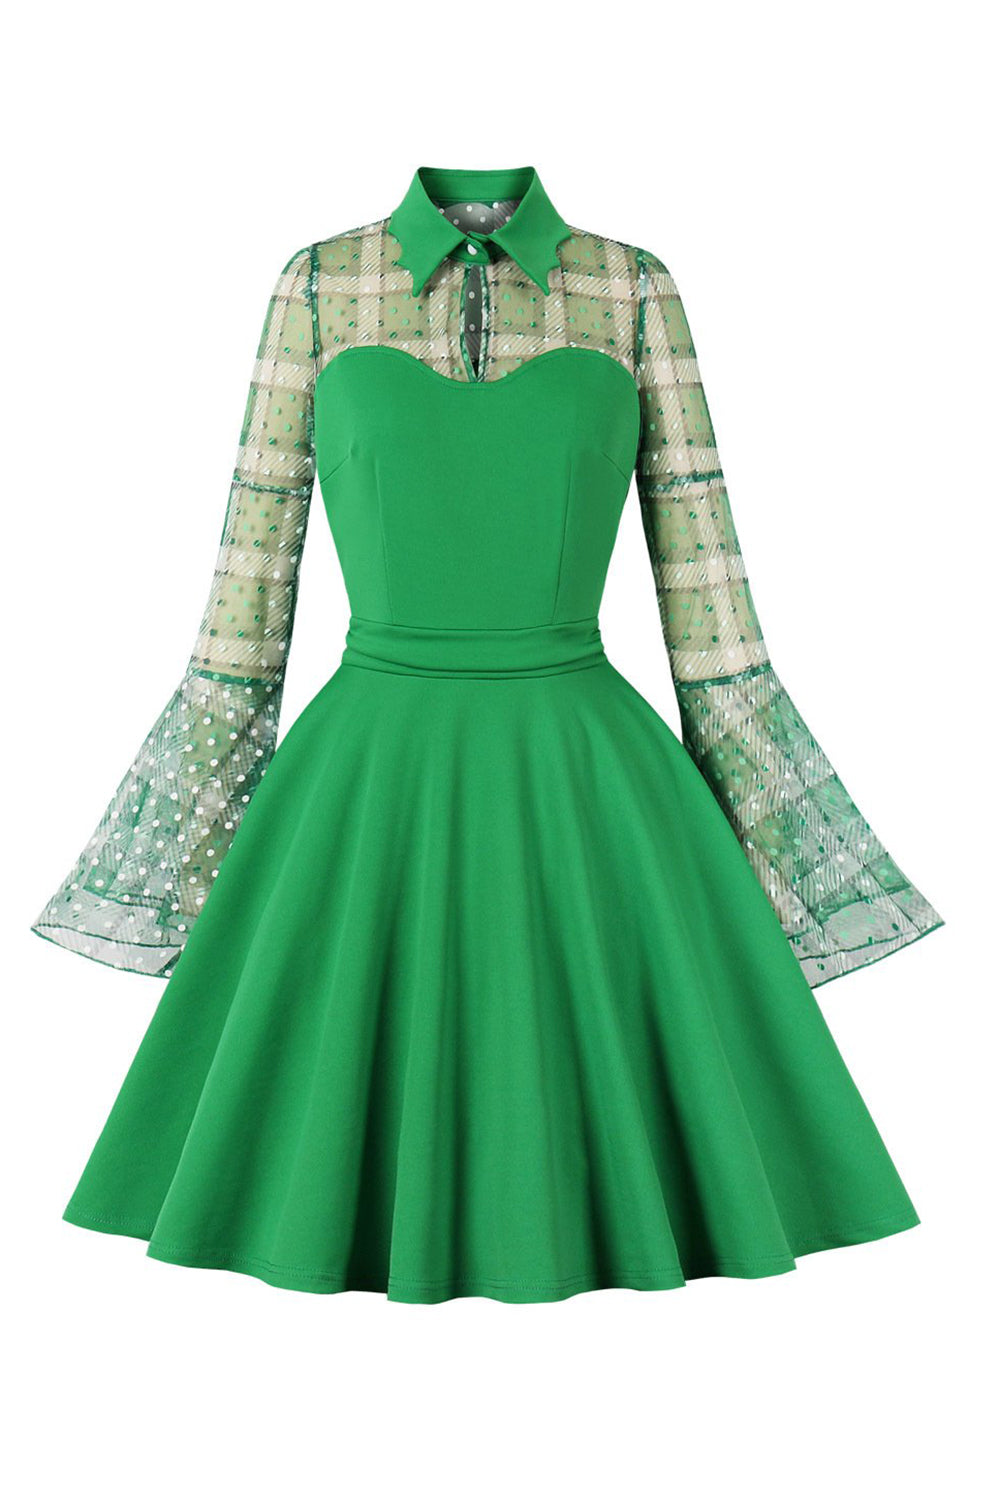 Kariertes langärmeliges grünes Vintage Kleid